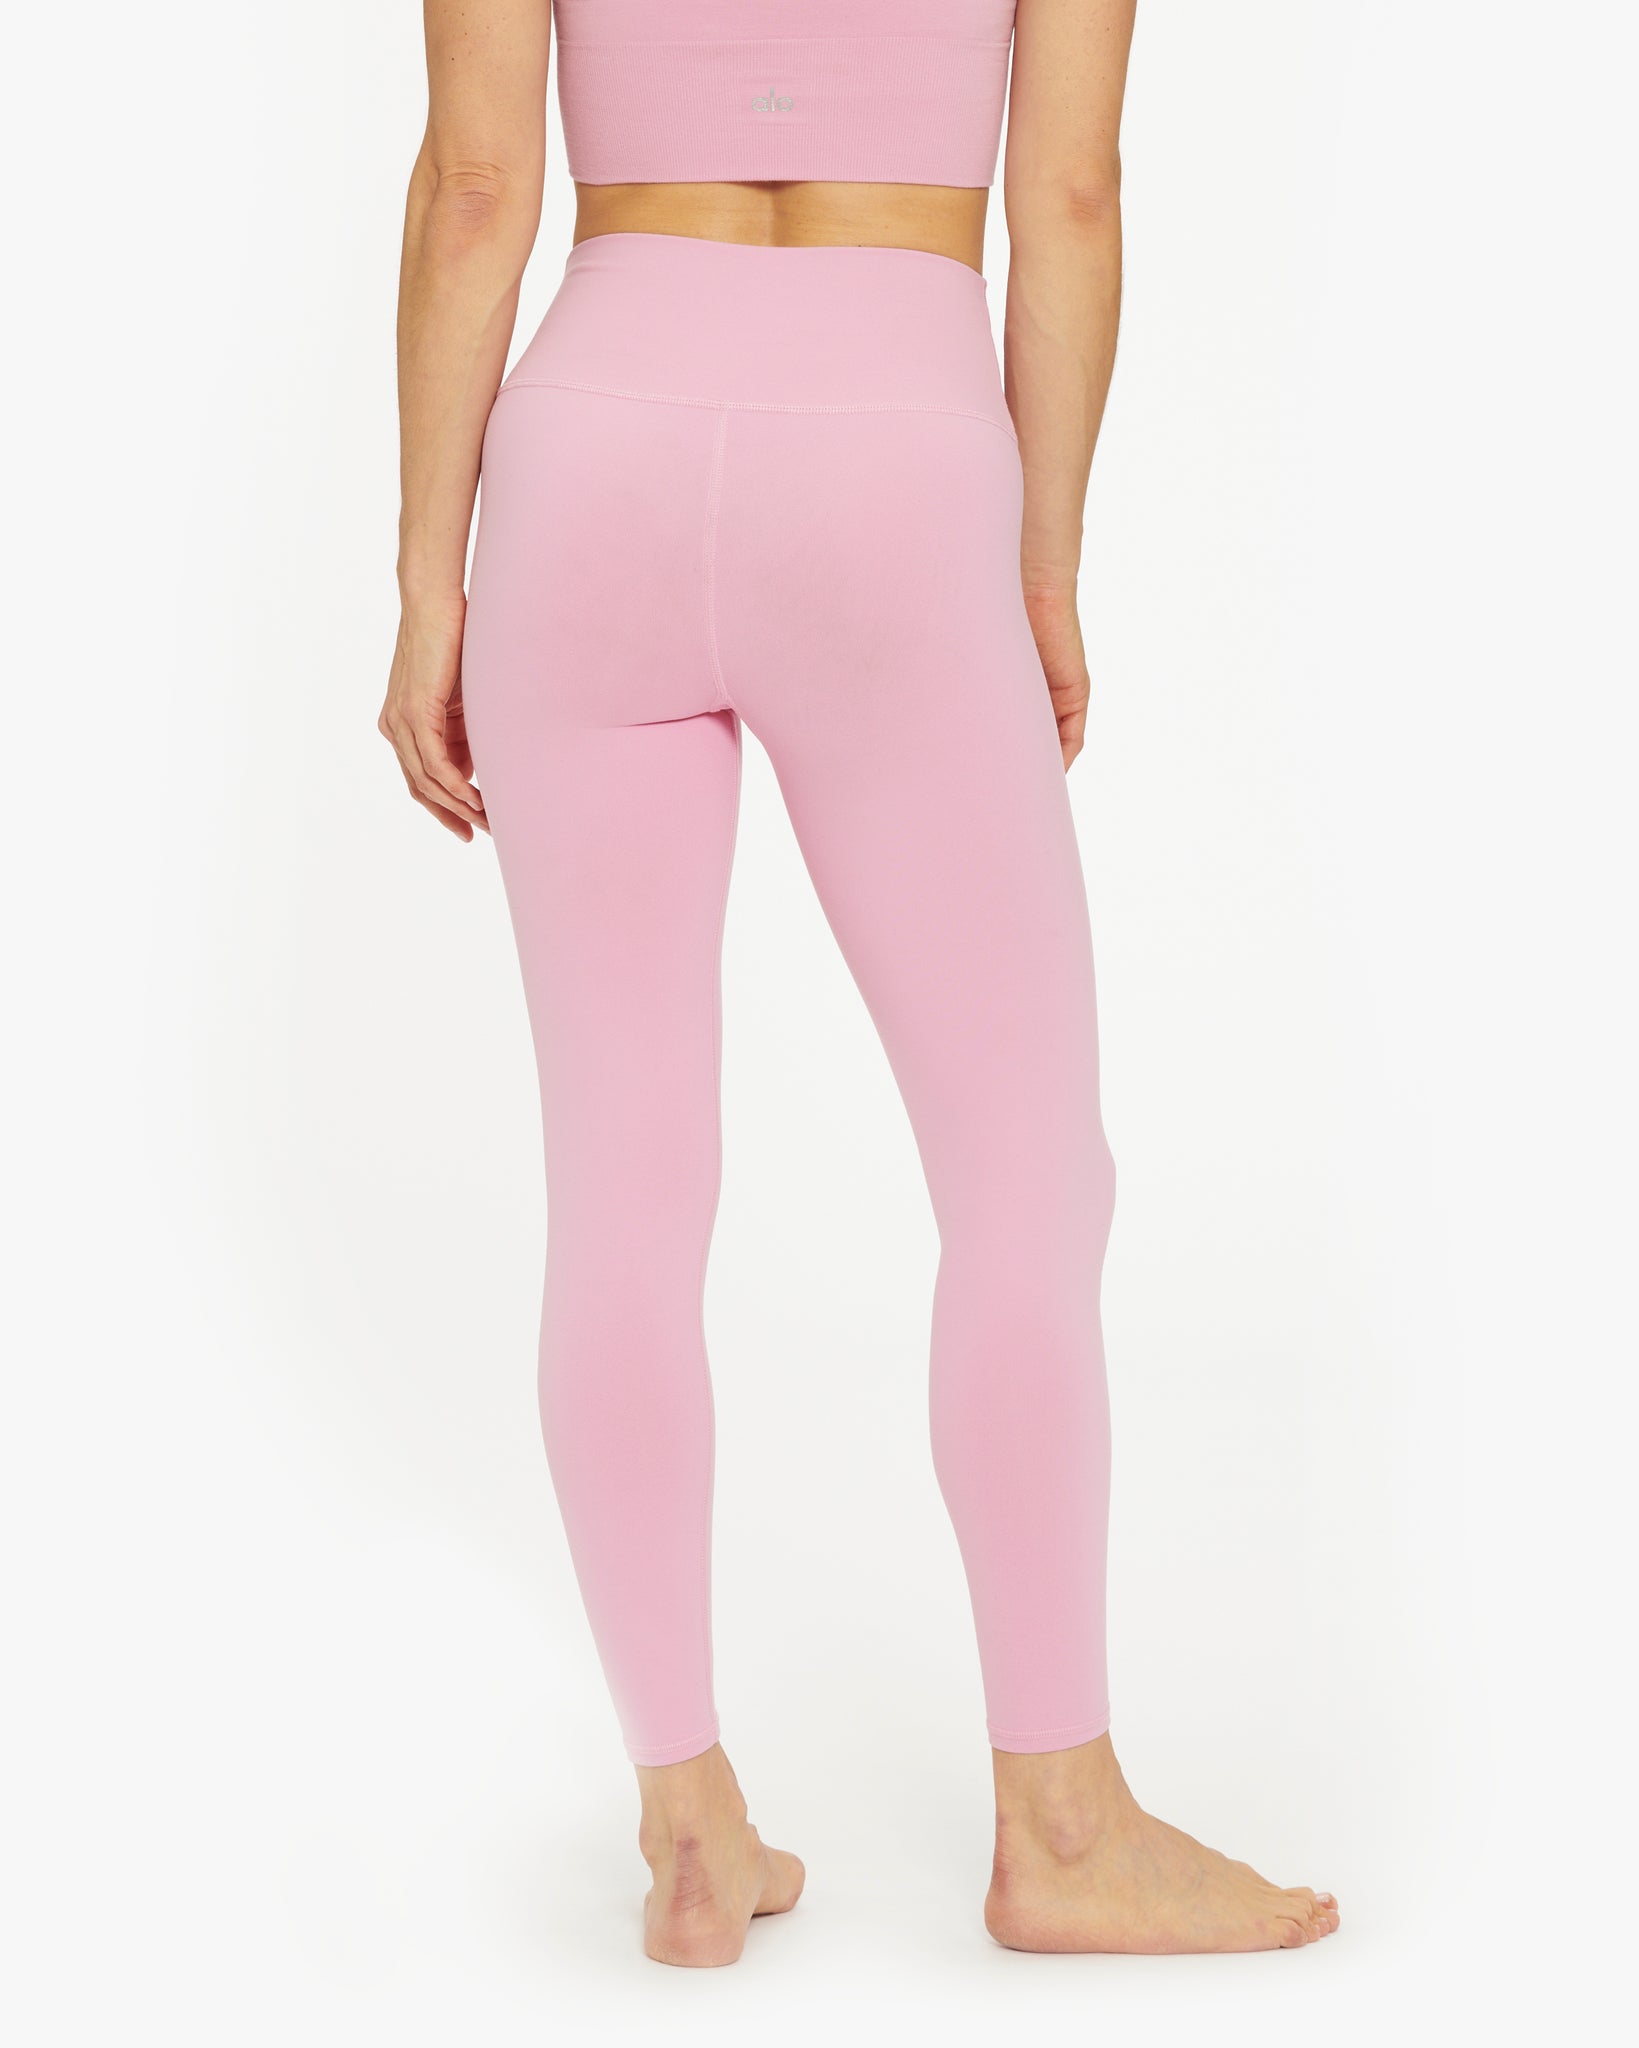 Alo Yoga High-Waist Moto Legging - Macaron Pink - Size XS - Nylon